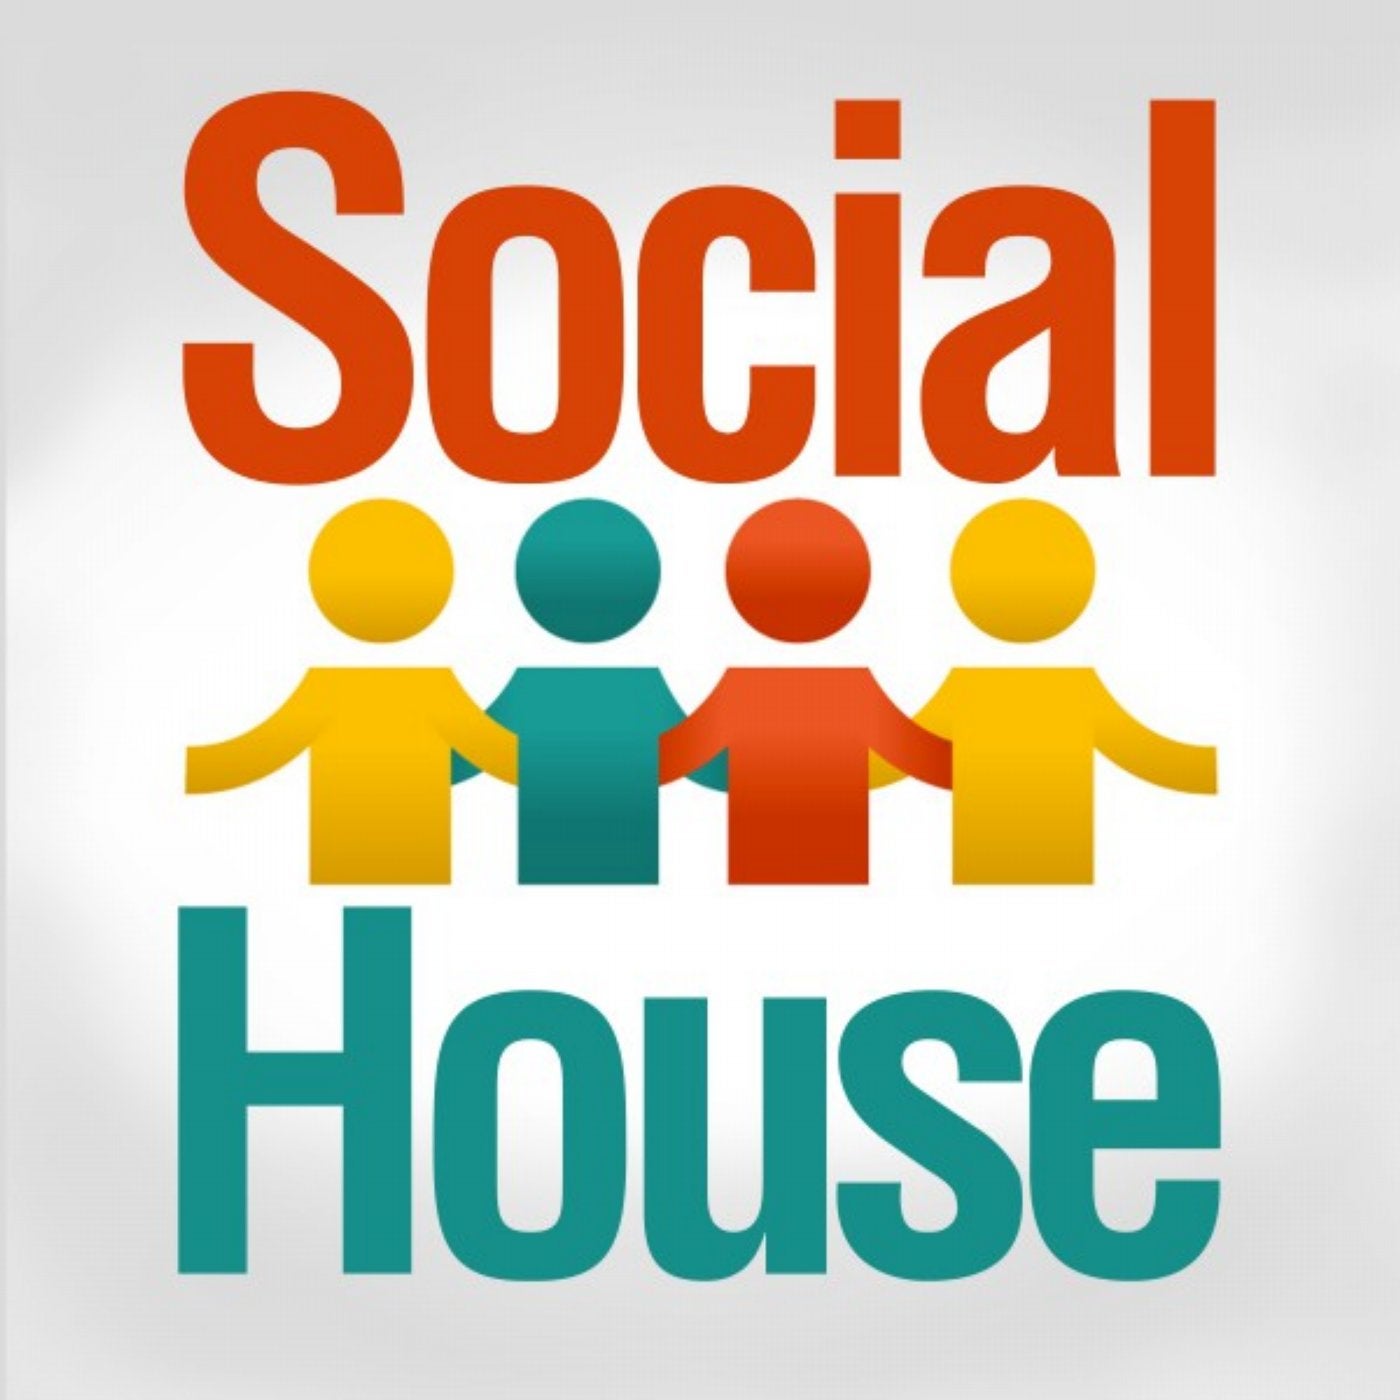 Social House